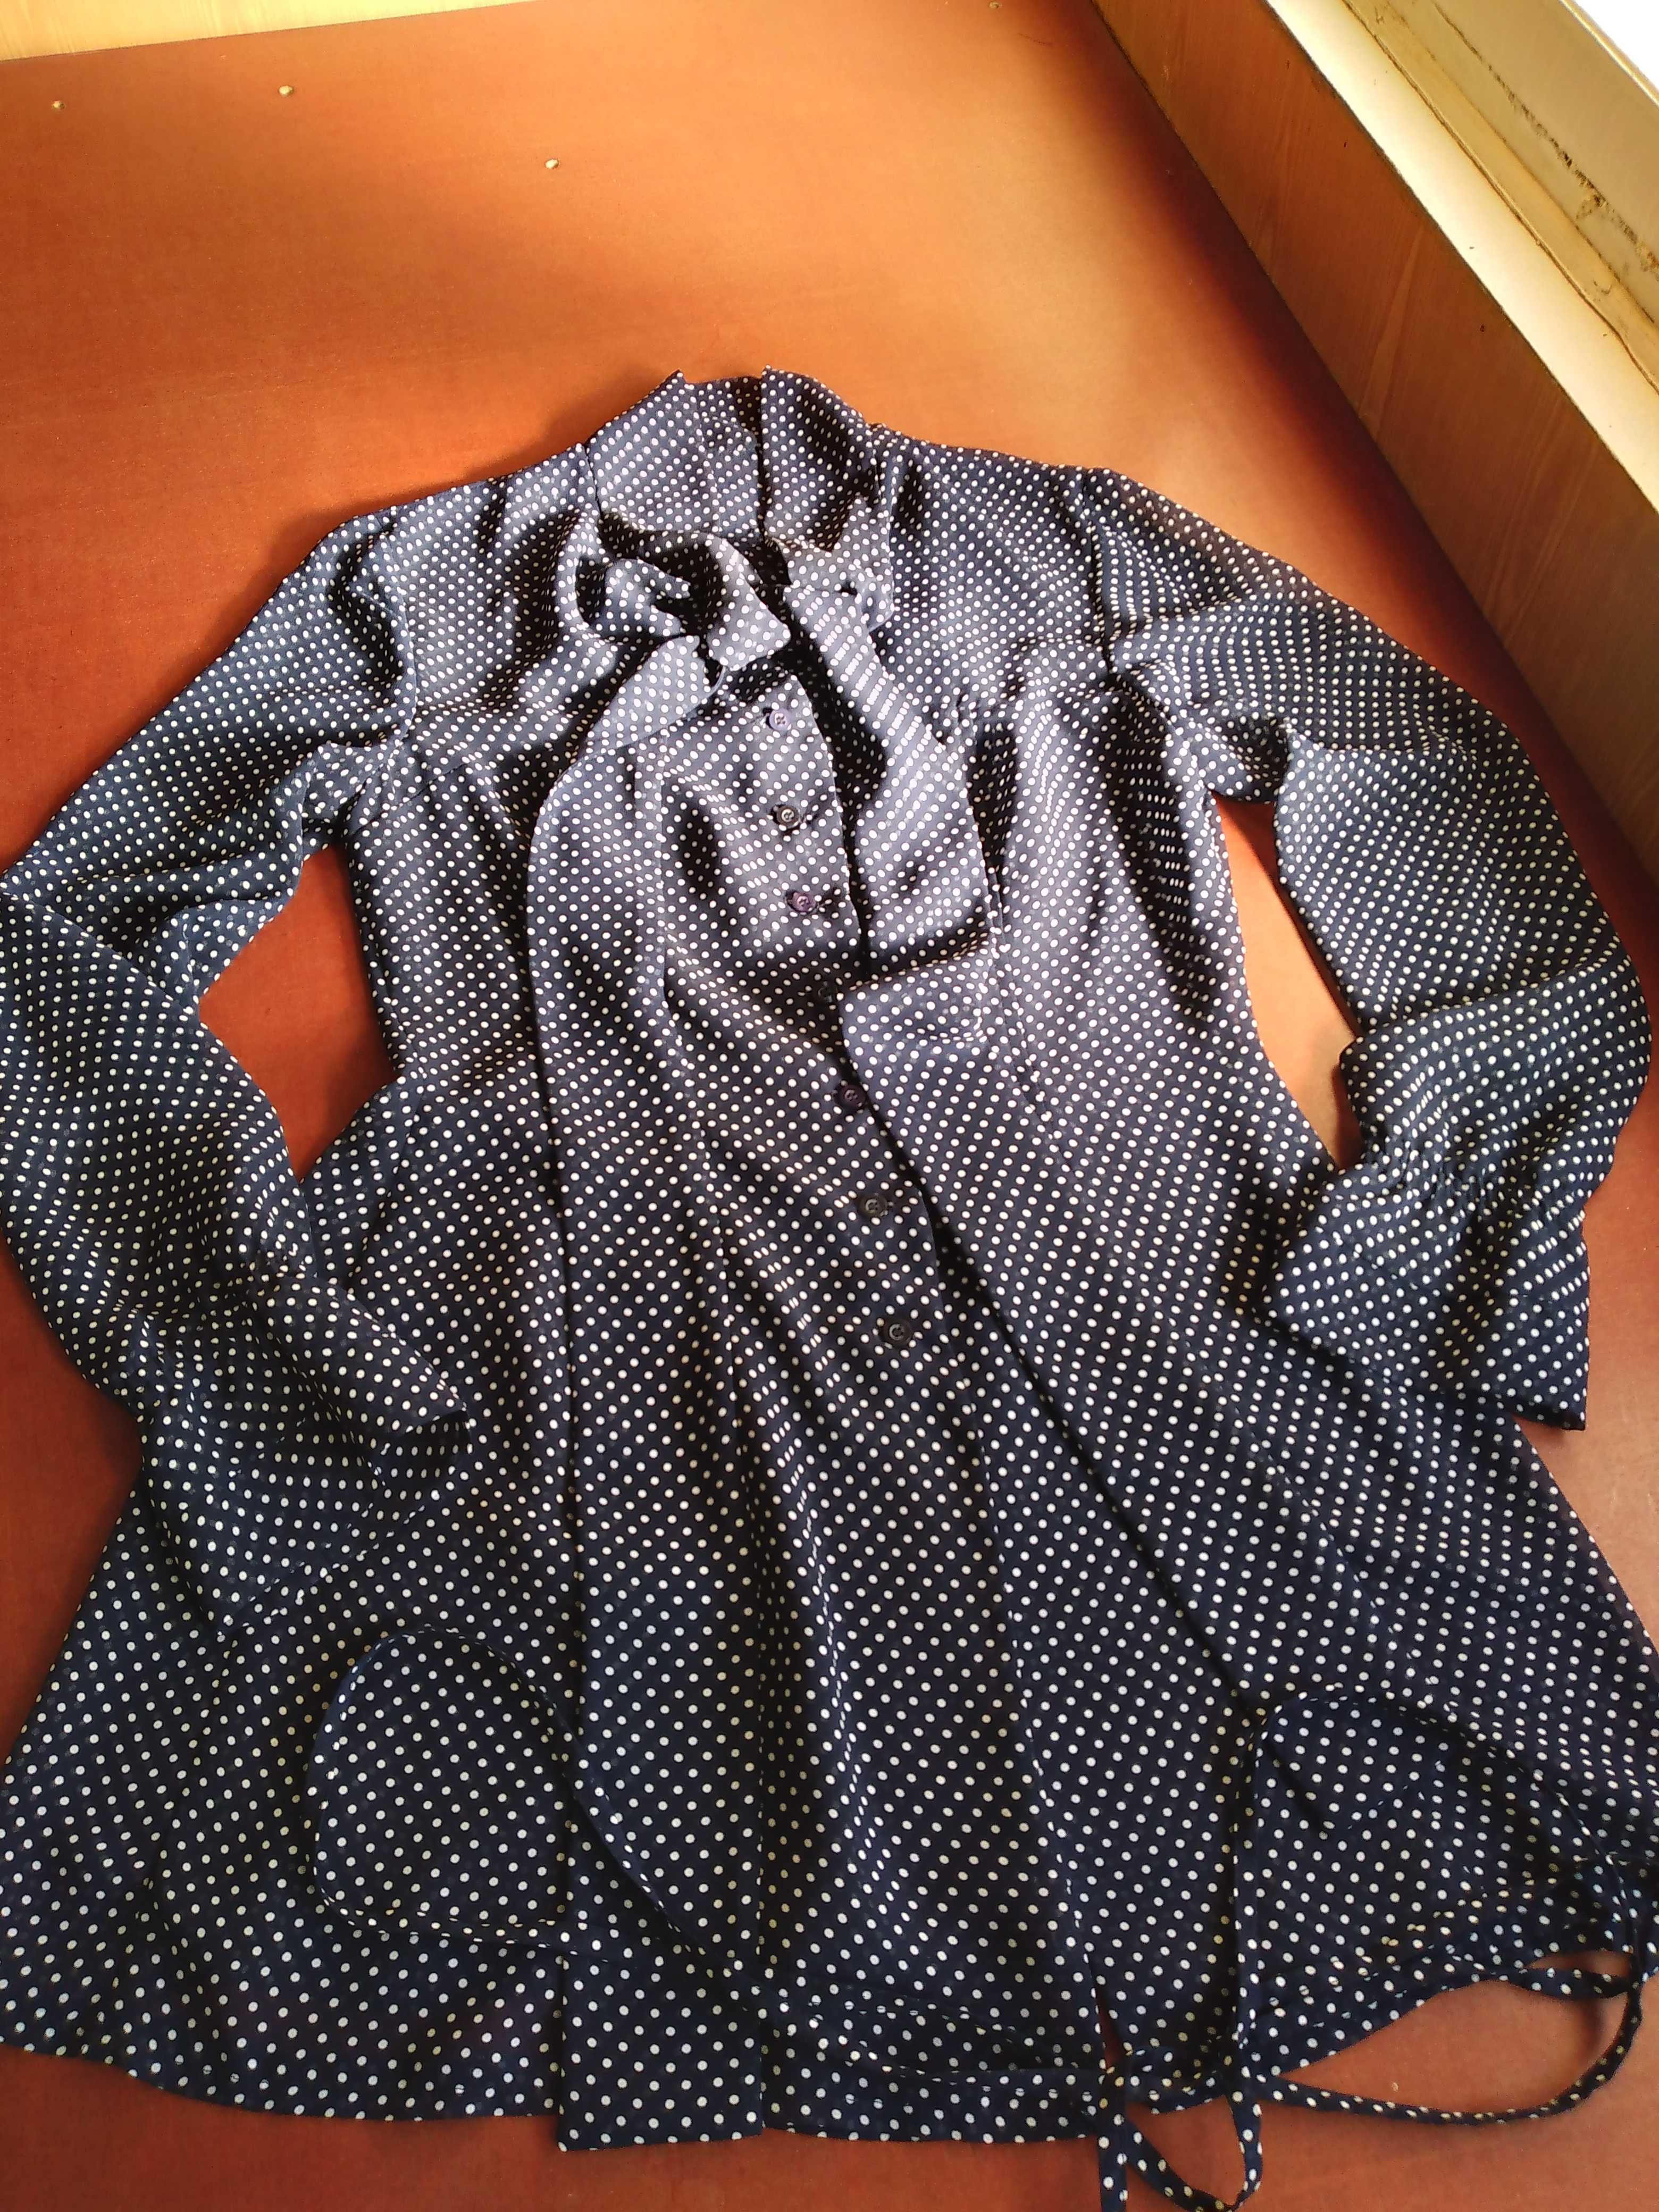 Блузка из шифона в горошек,размер 38.